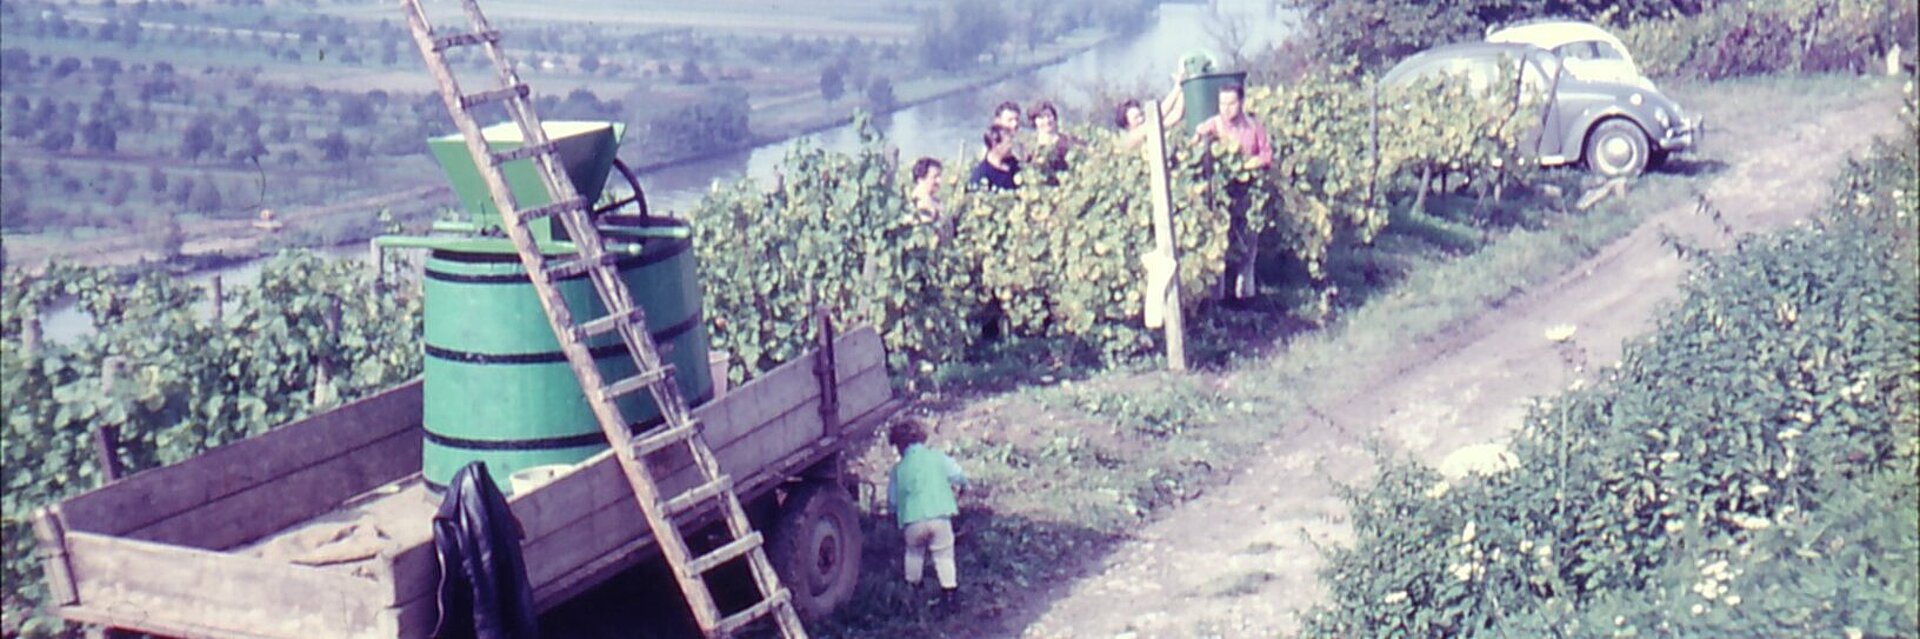 Historische Aufnahme der Weinernte in der Veitshöchheimer Weinlage Sonnenschein. Weinbauern bei der Arbeit in den Weinbergen